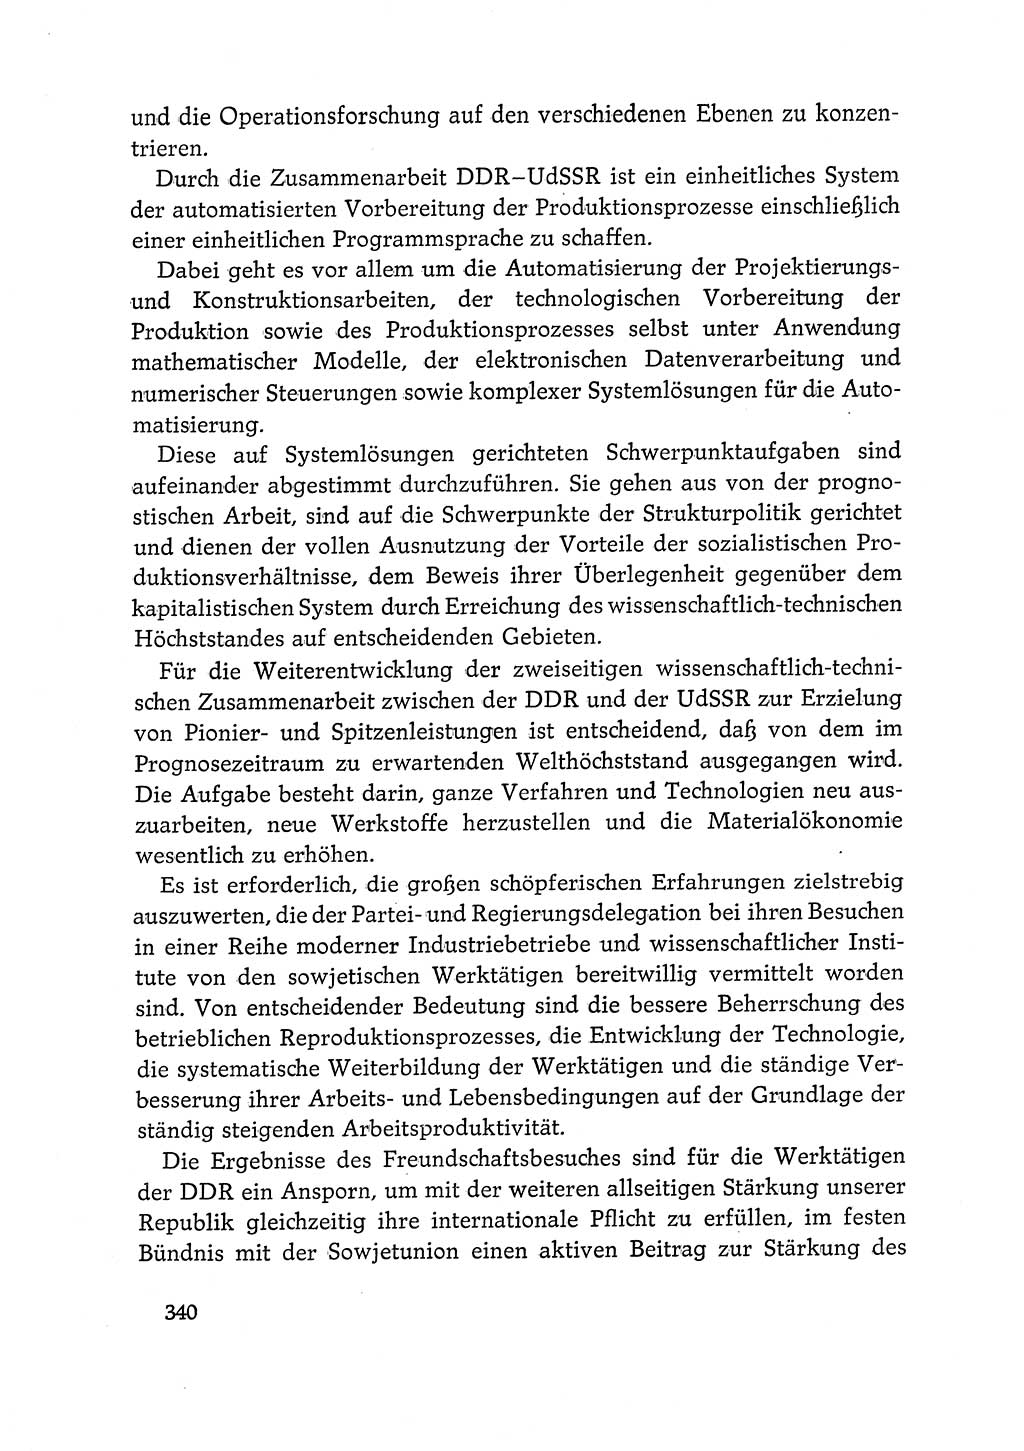 Dokumente der Sozialistischen Einheitspartei Deutschlands (SED) [Deutsche Demokratische Republik (DDR)] 1968-1969, Seite 340 (Dok. SED DDR 1968-1969, S. 340)